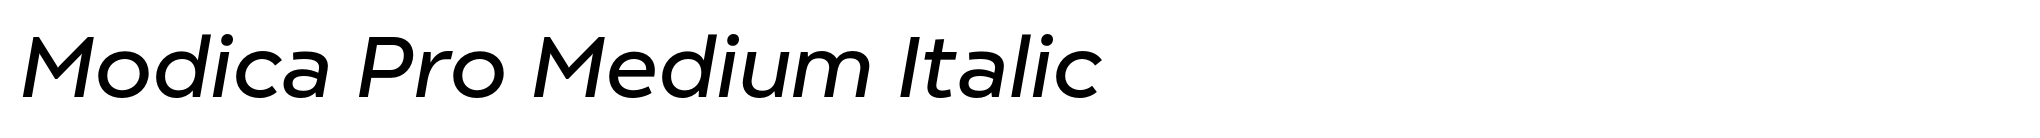 Modica Pro Medium Italic image